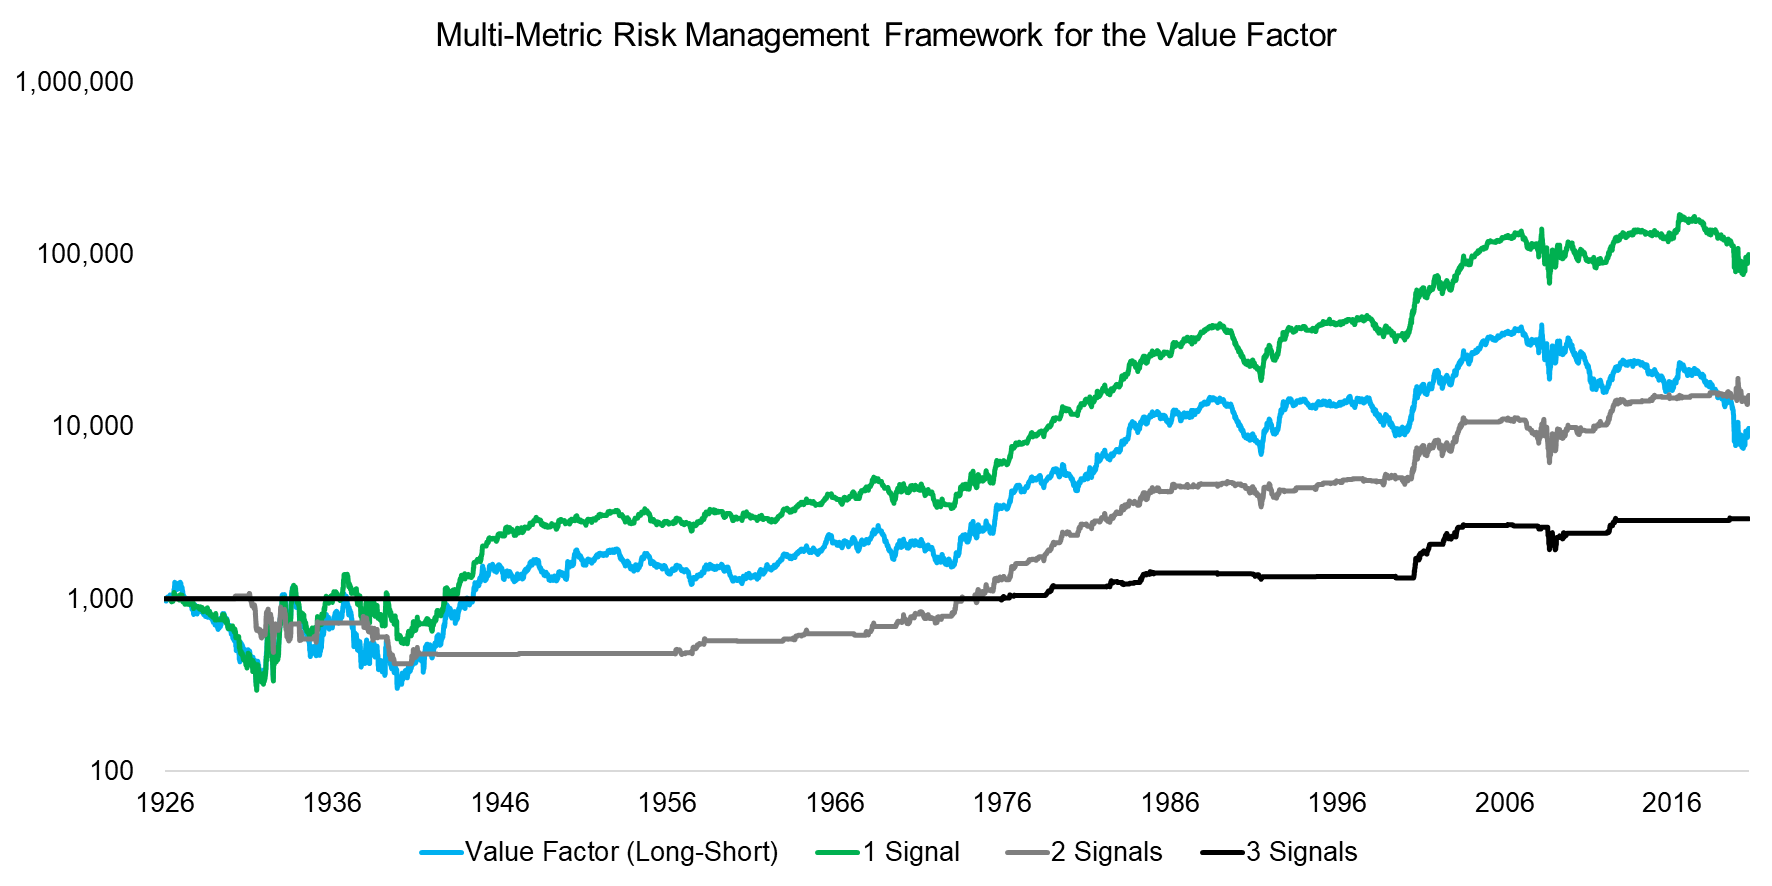 Multi-Metric Risk Management Framework for the Value Factor